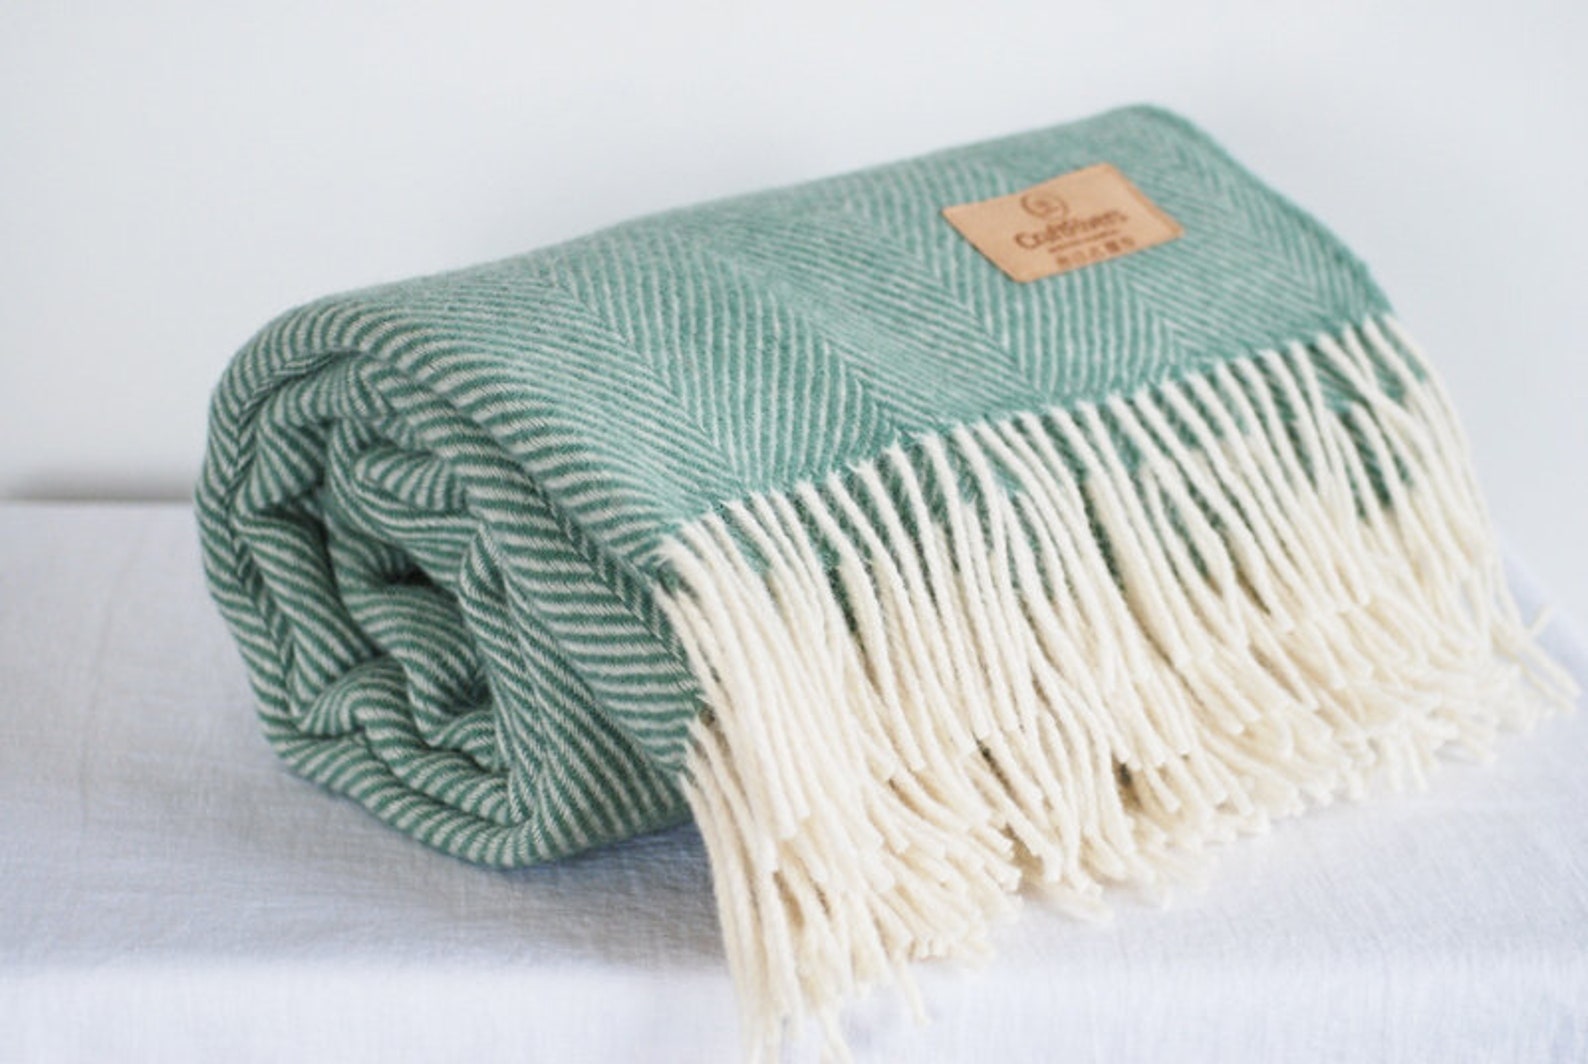 Pure wool blanket sage green ivory wool throw blanket | Etsy